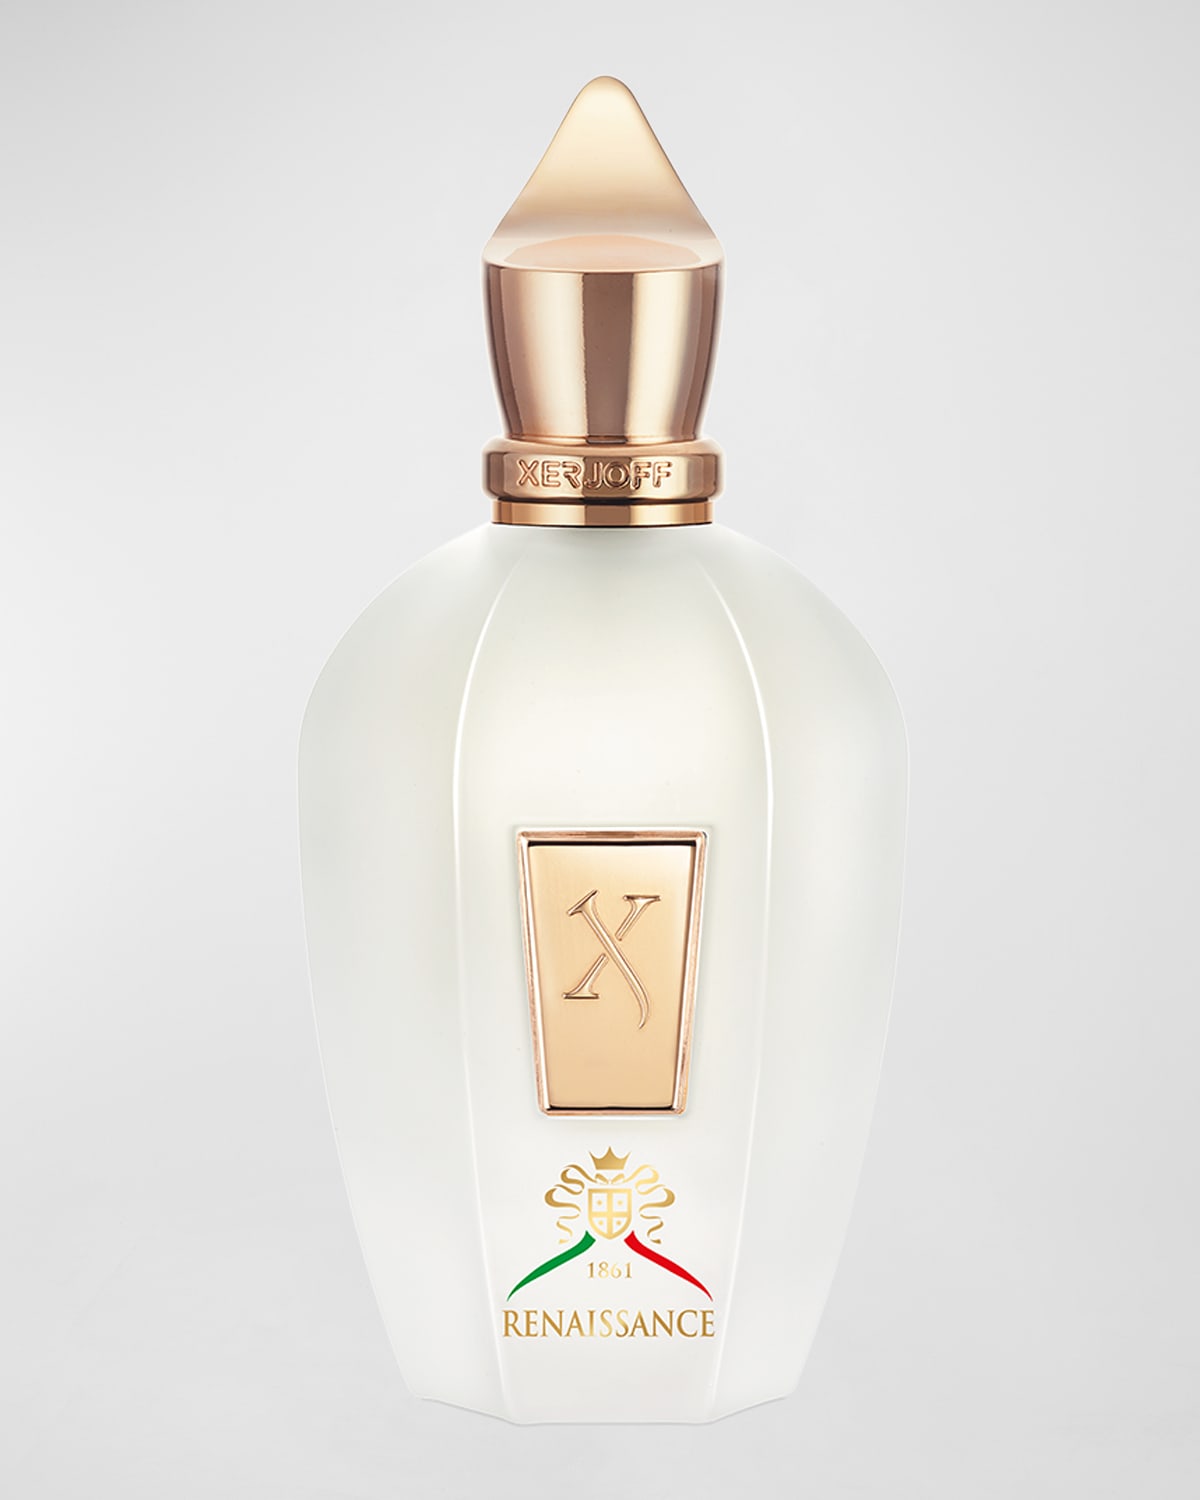 Renaissance Eau de Parfum, 3.4 oz.